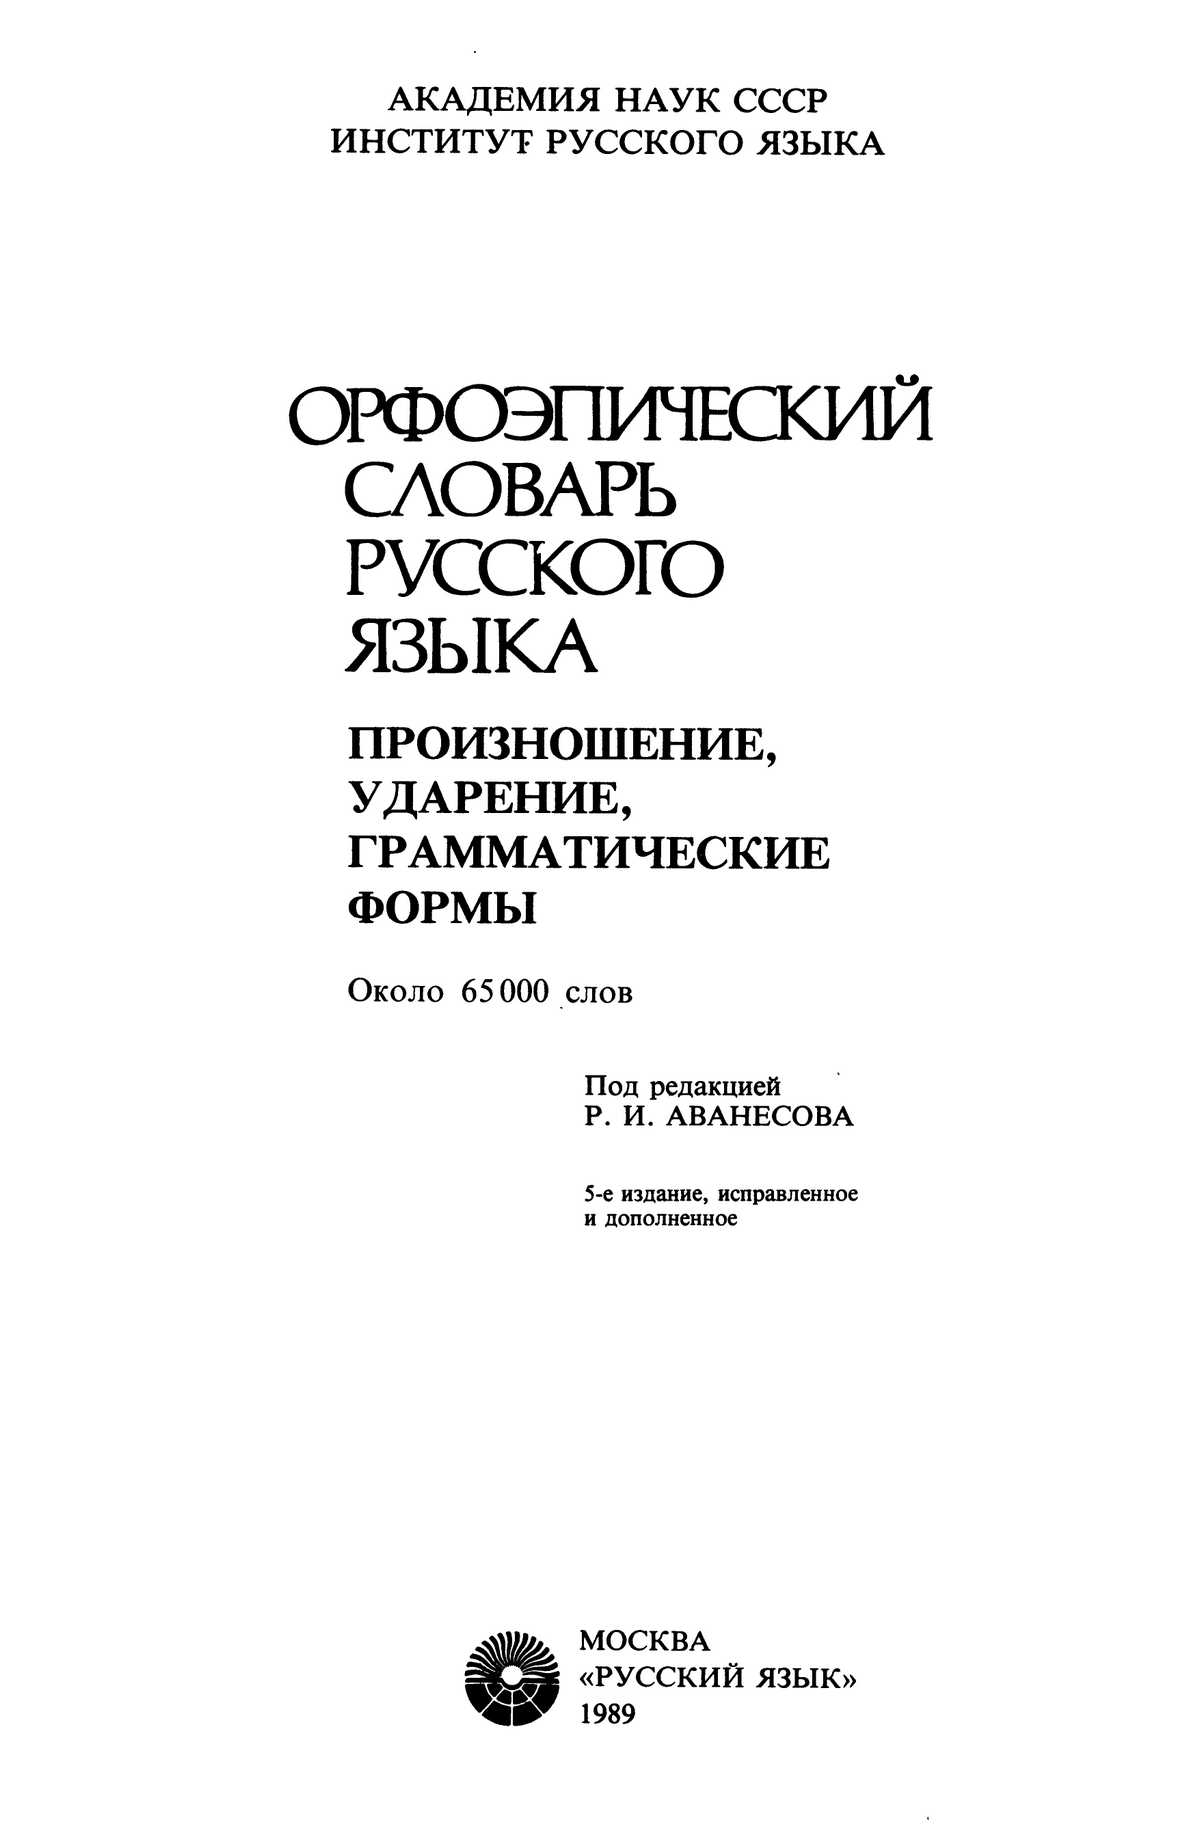 Фотокопия pdf / скан страницы 1 орфоэпического словаря под редакцией Аванесова (5 издание, 1989 год)